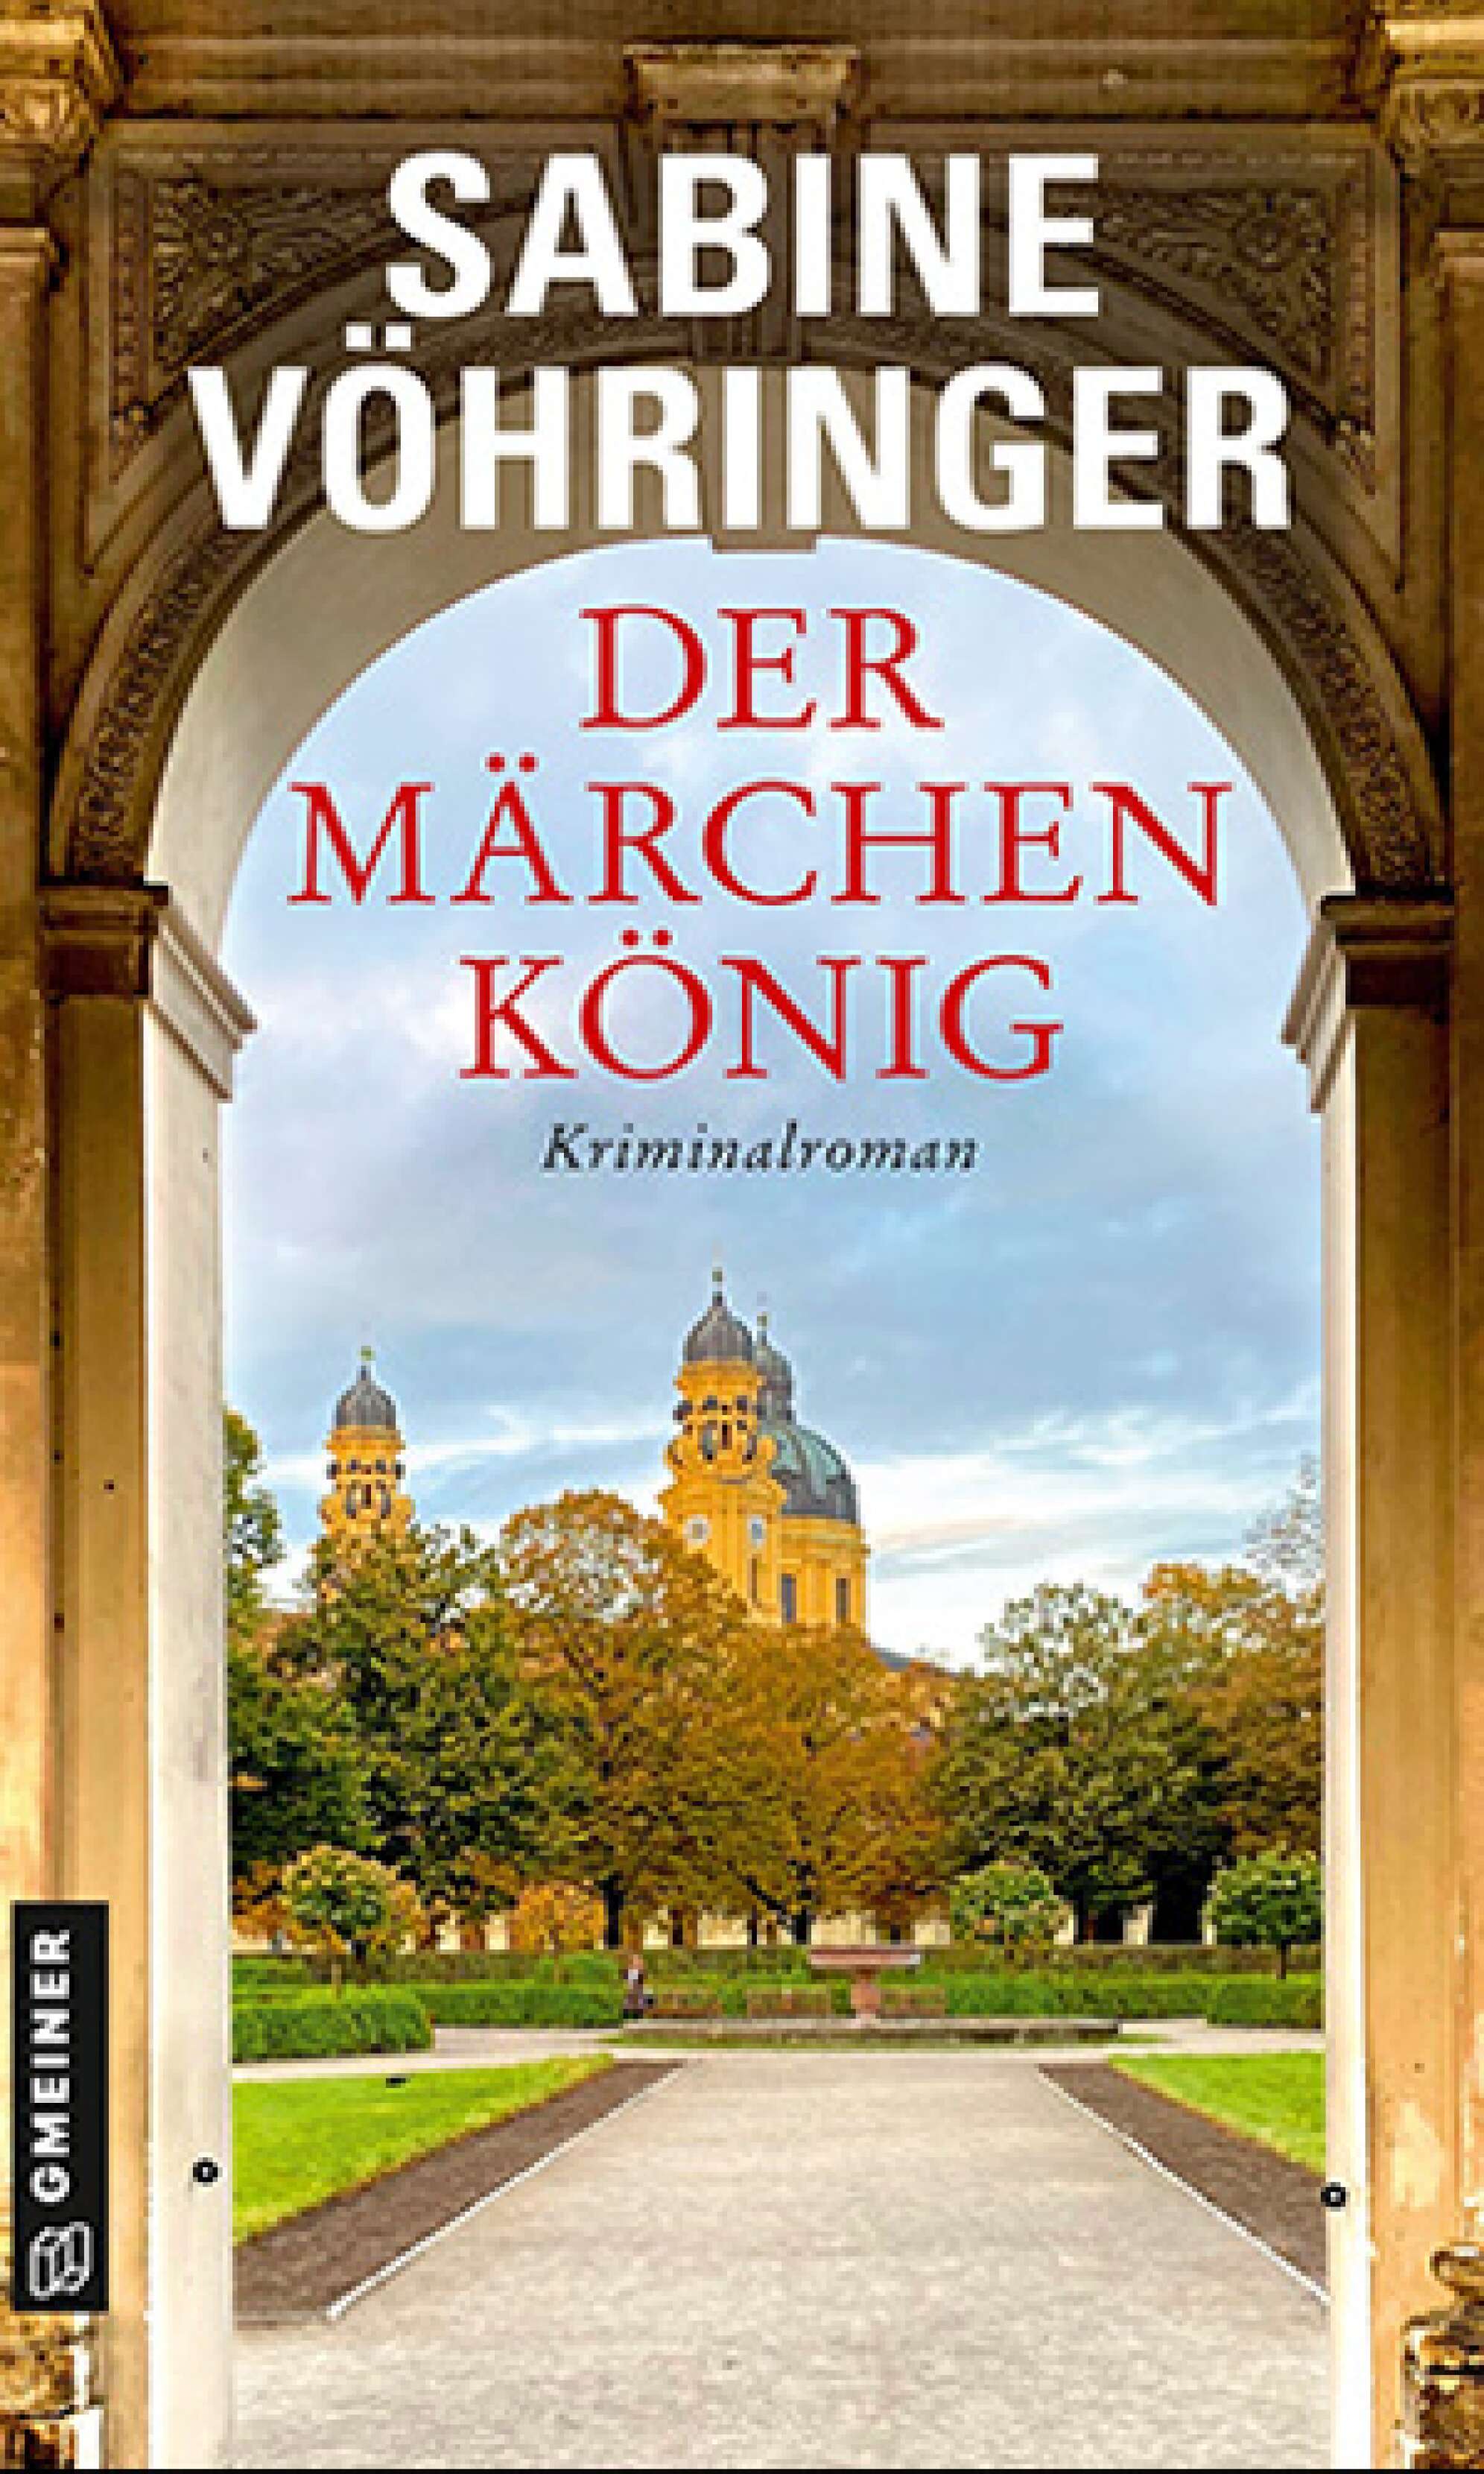 Das Buchcover des Kriminalromans "Der Märchenkönig" von Sabine Vöhringer